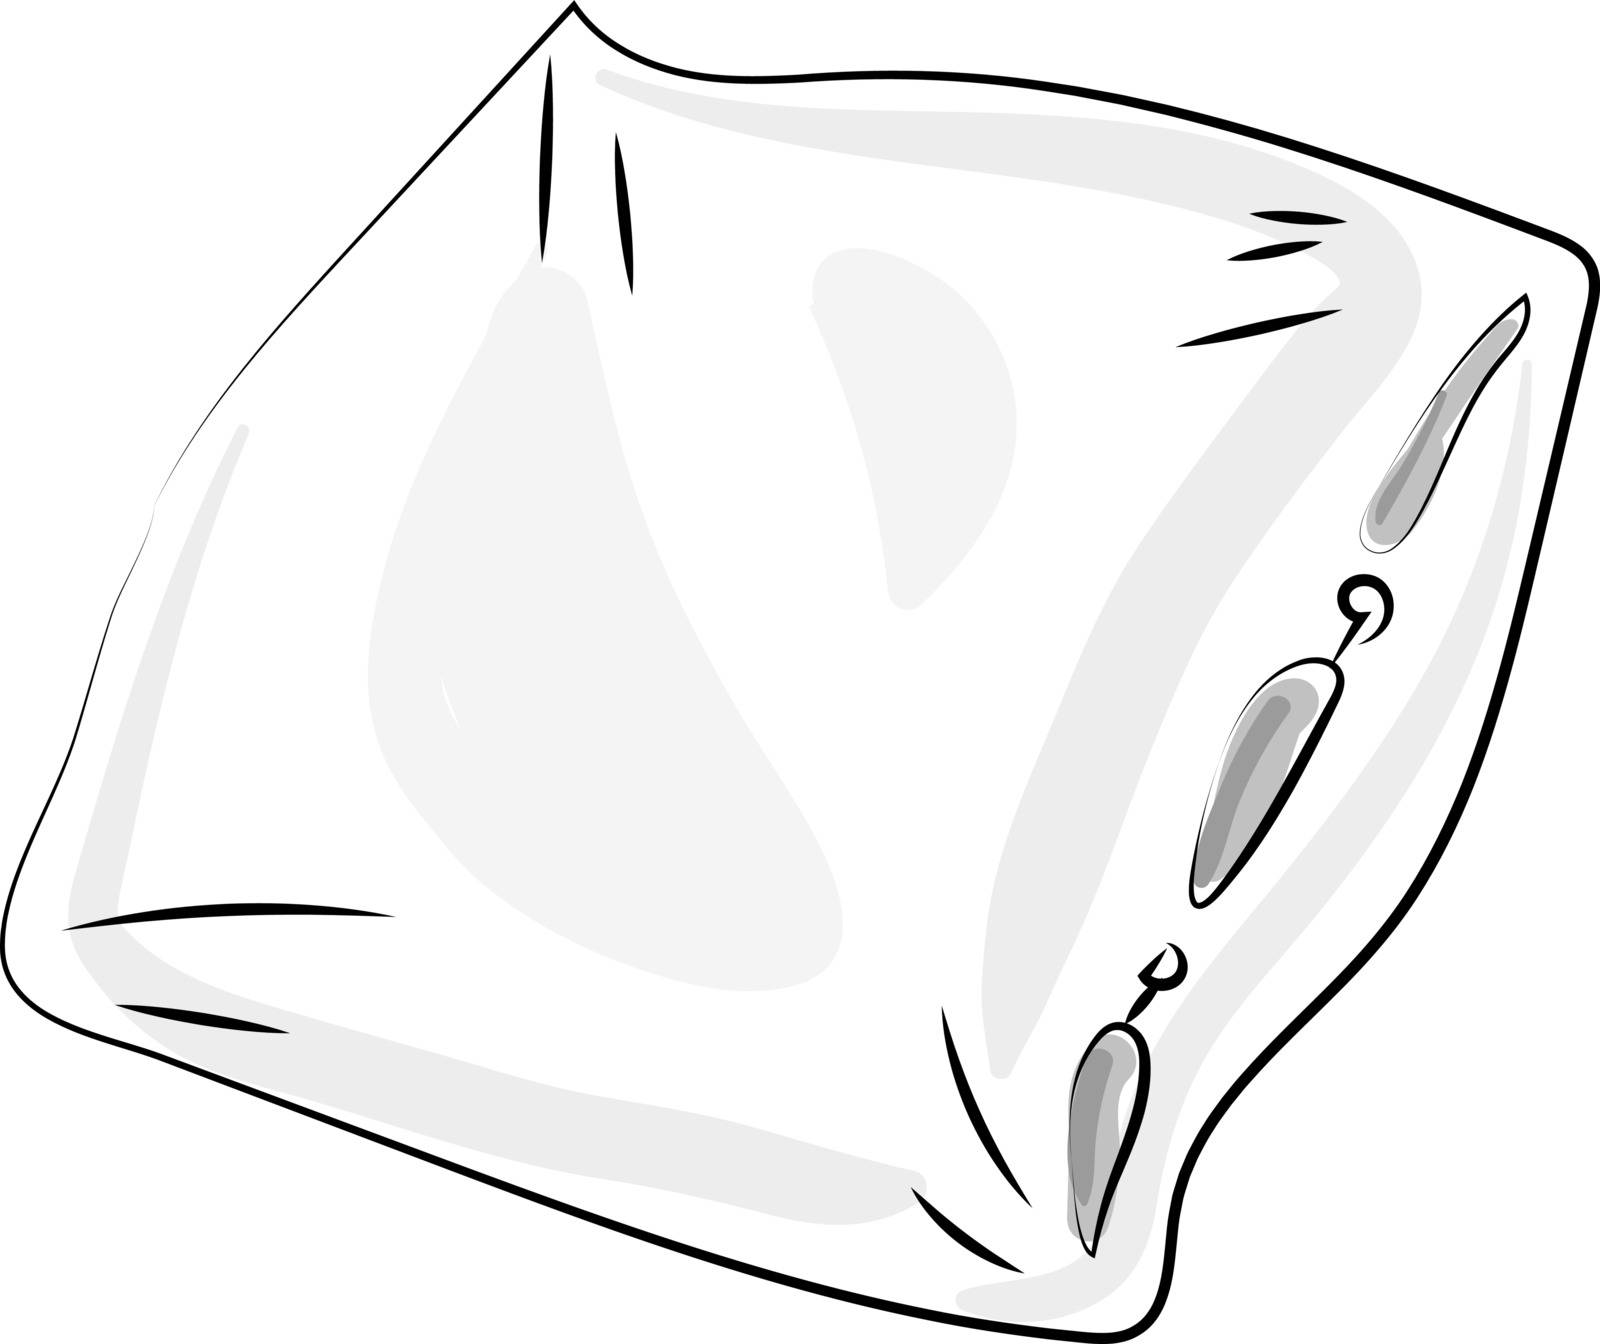 White pillow, illustration, vector on white background.